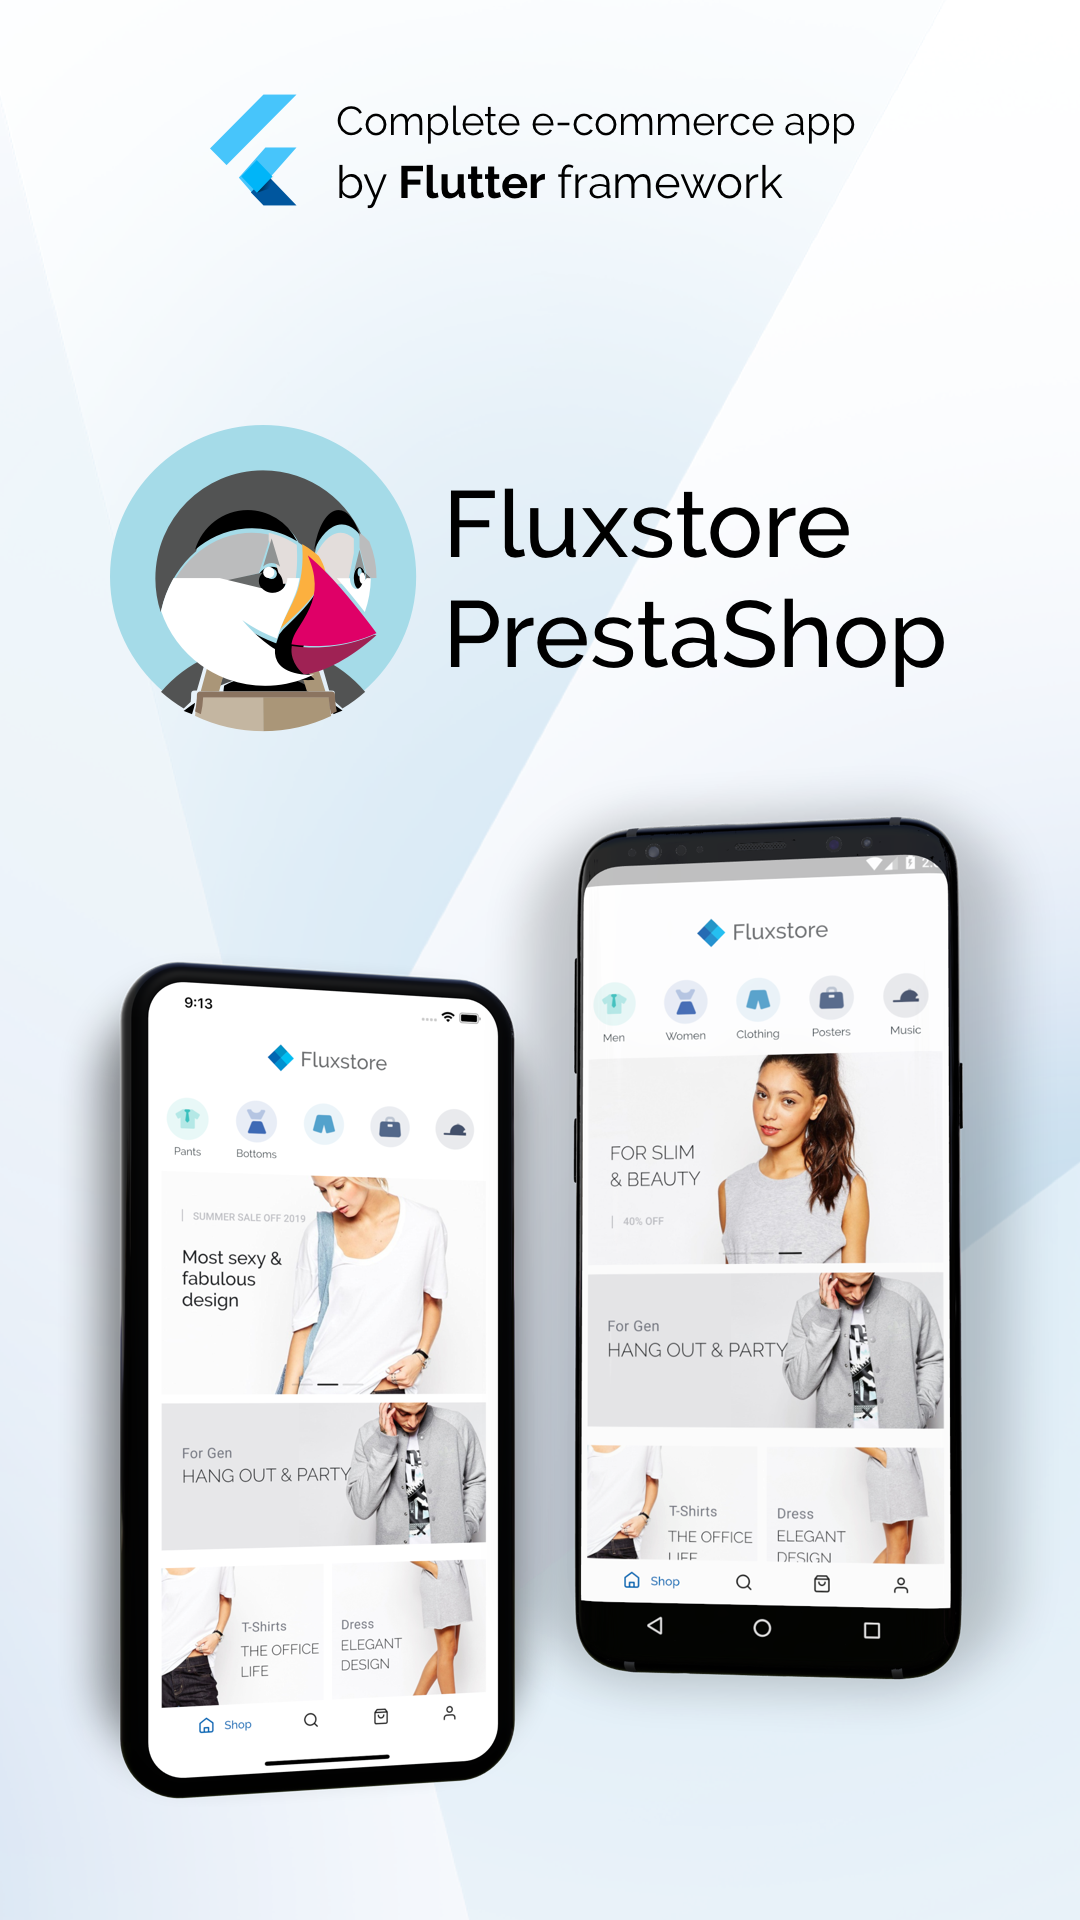 Fluxstore Prestashop - Flutter E-commerce Full App | It's All Widgets!